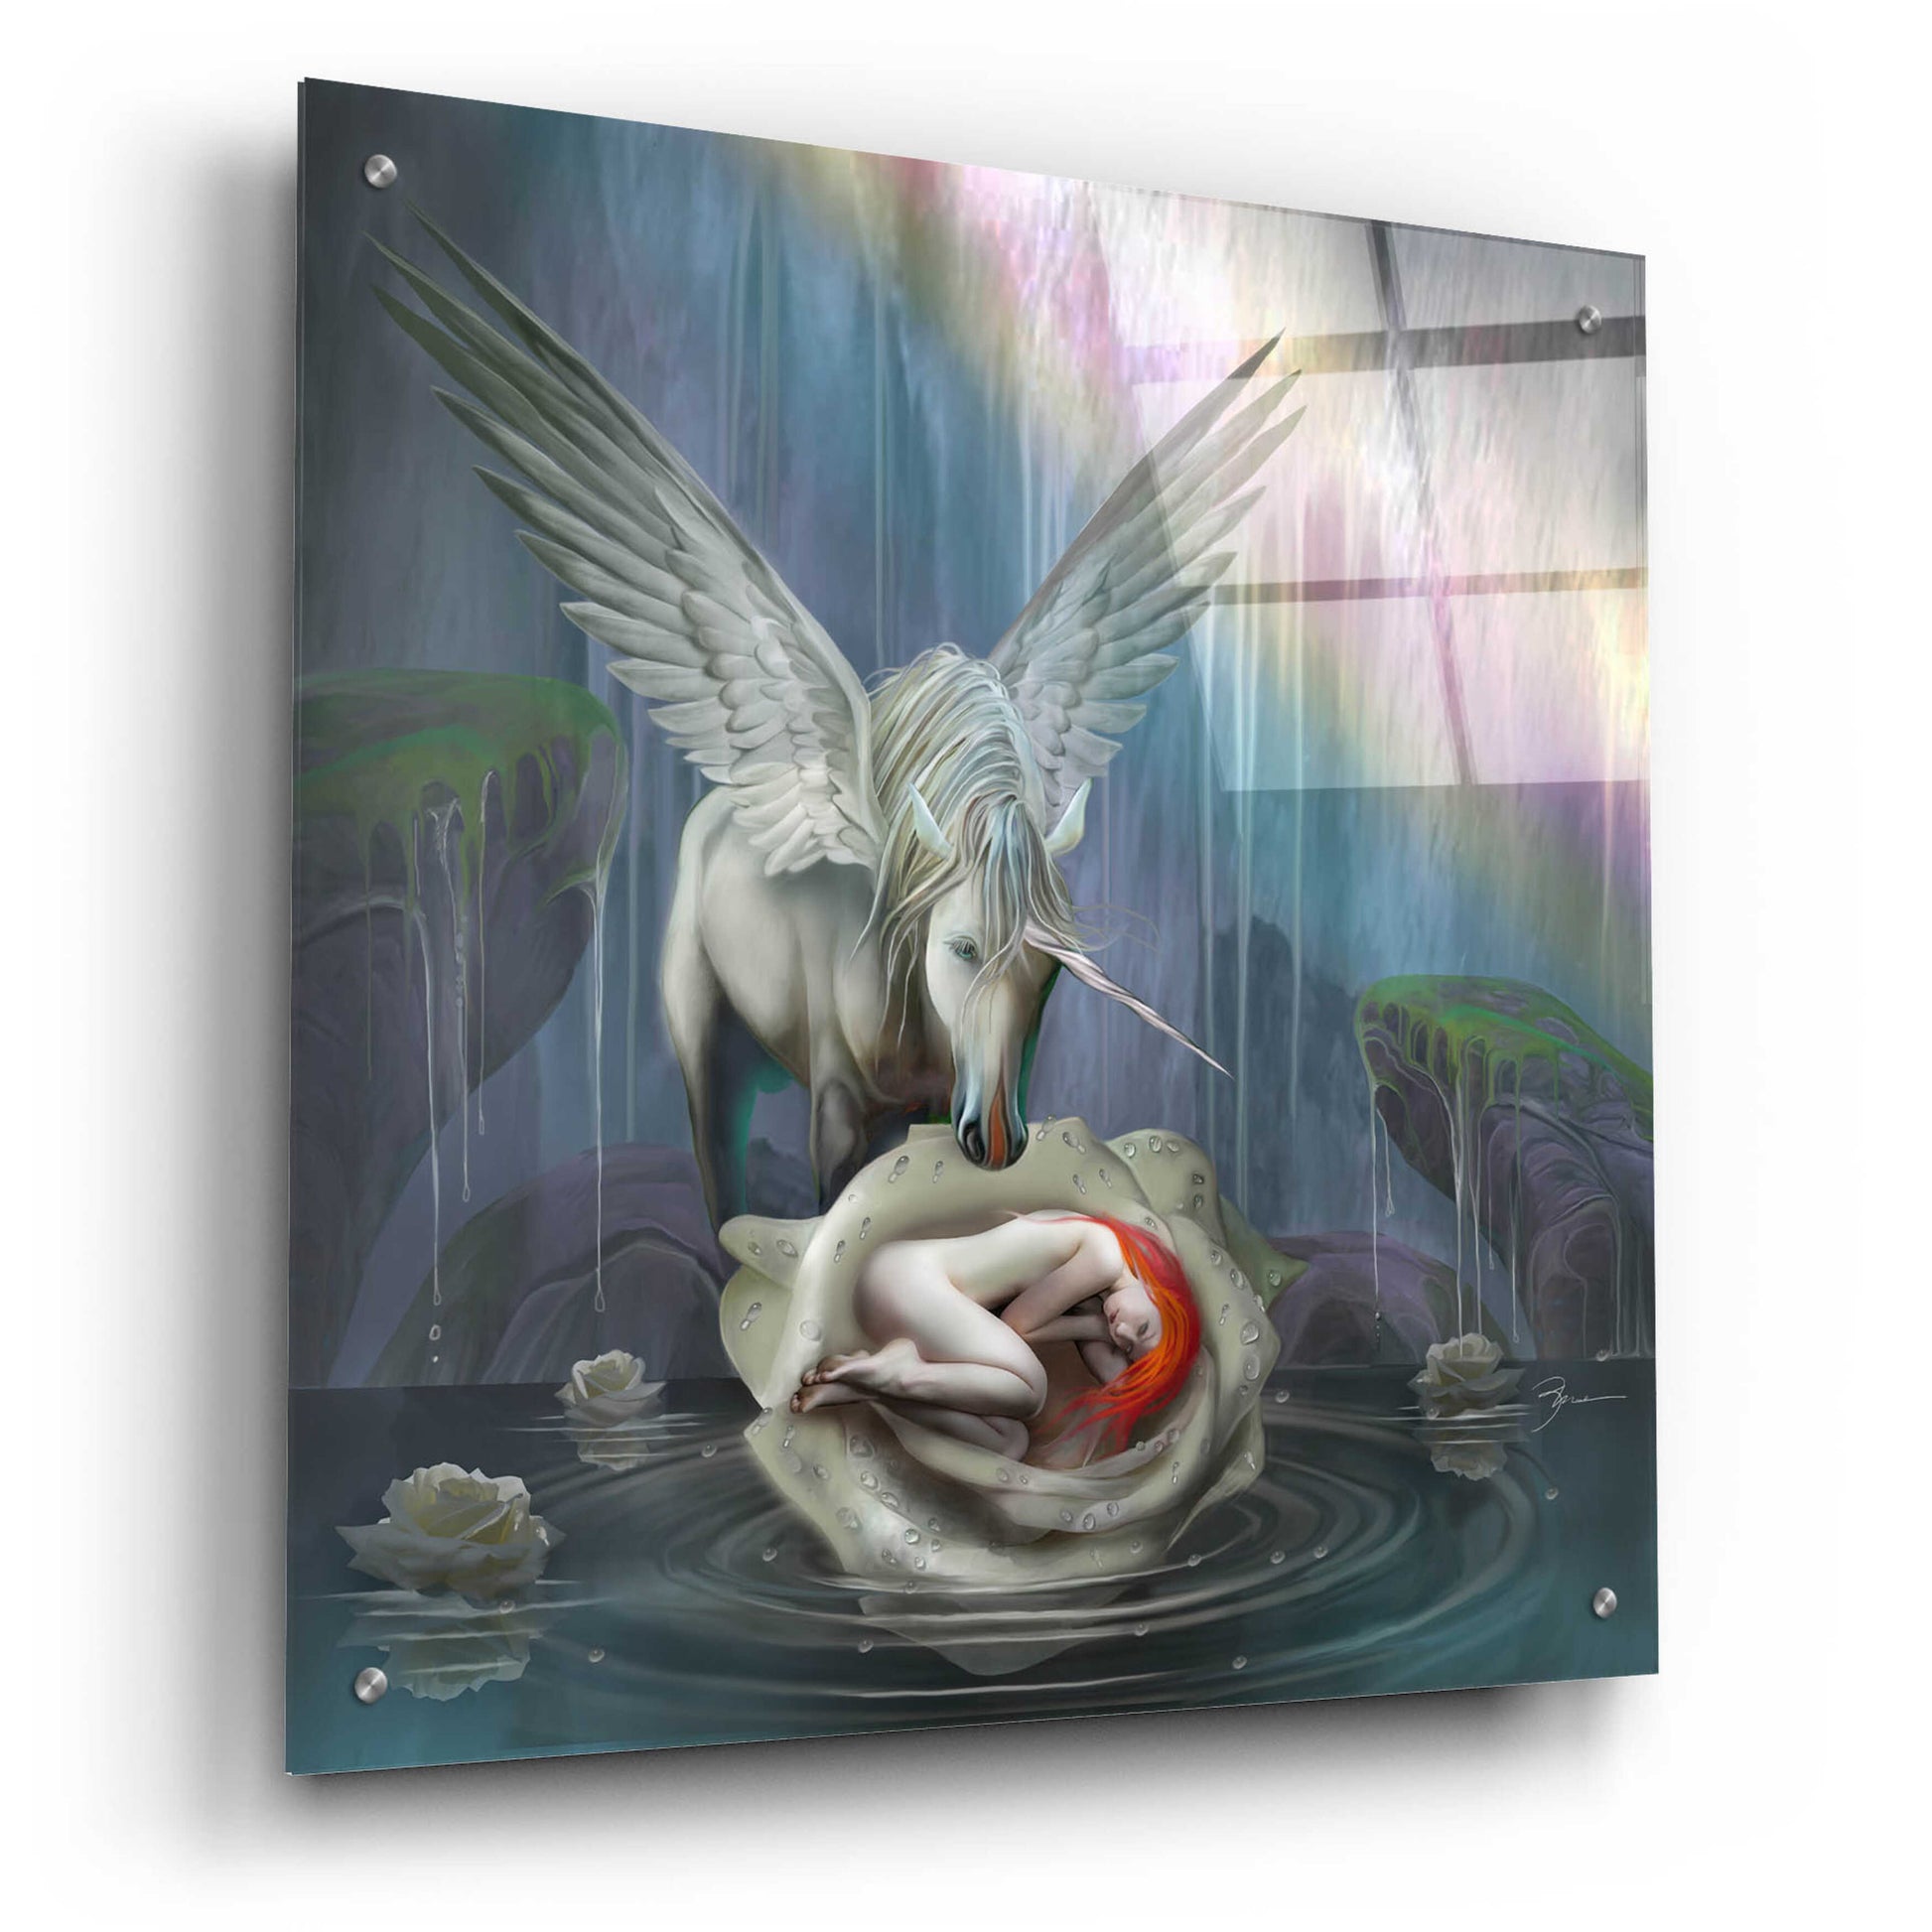 Epic Art 'Venus Rebirth' by Enright, Acrylic Glass Wall Art,24x24